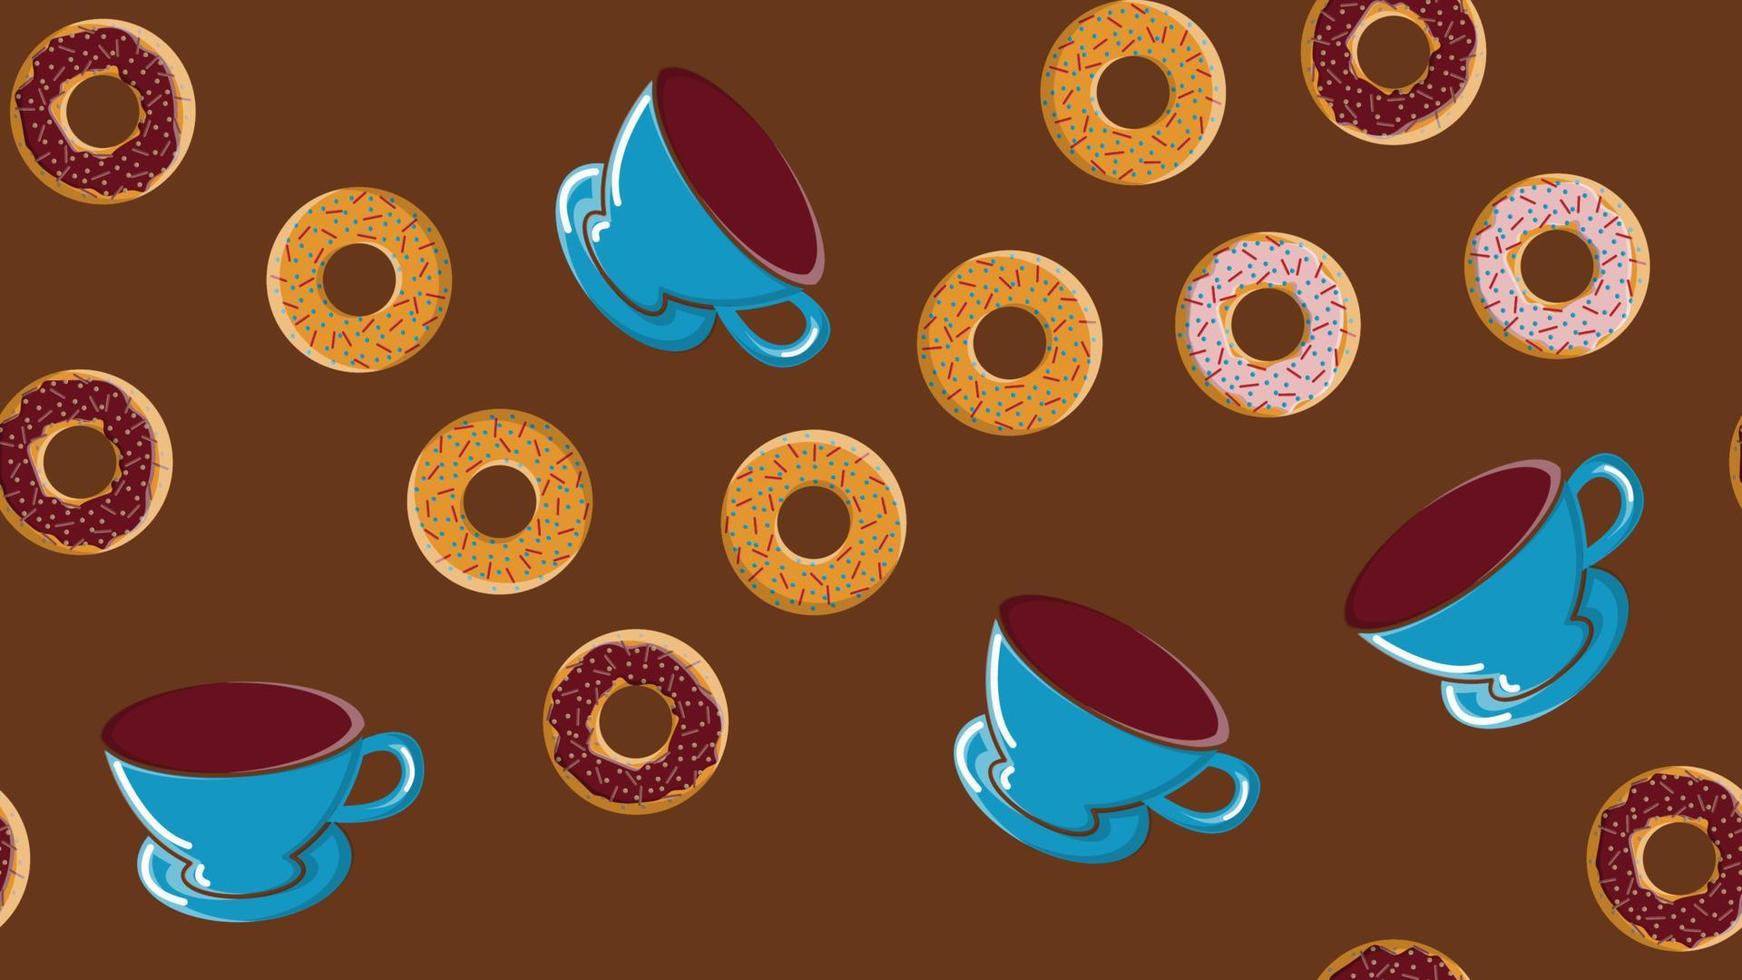 patrón impecable, textura de diferentes rosquillas calientes redondas dulces y sabrosas con azúcar en chocolate caramelo y una taza de café fuerte caliente sobre un fondo marrón. ilustración vectorial vector